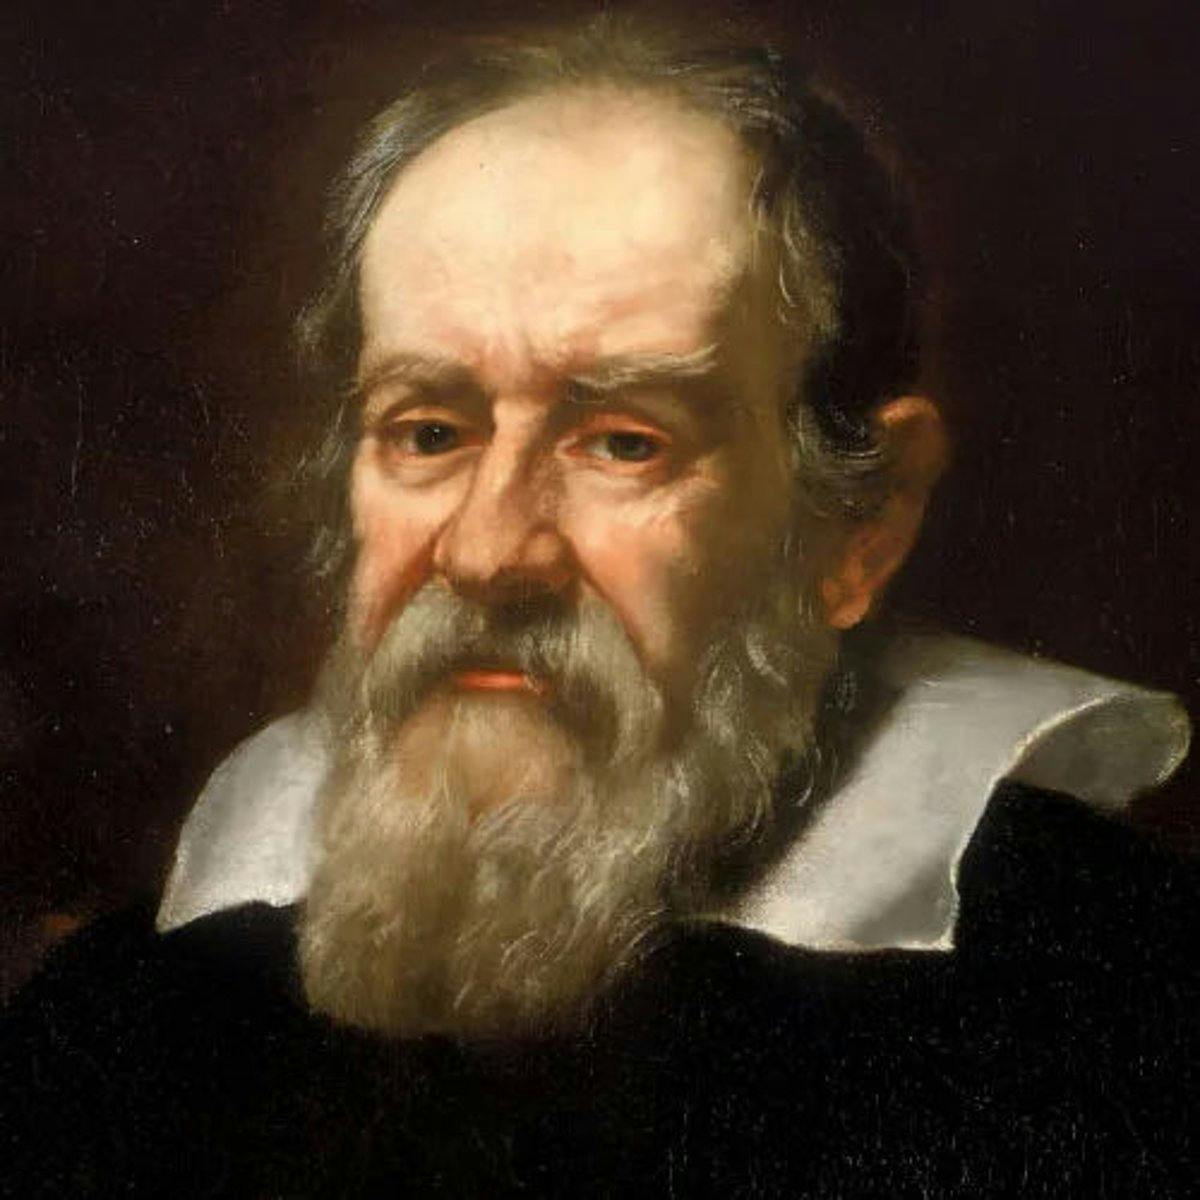 Galileo Galilei (Astronomer)